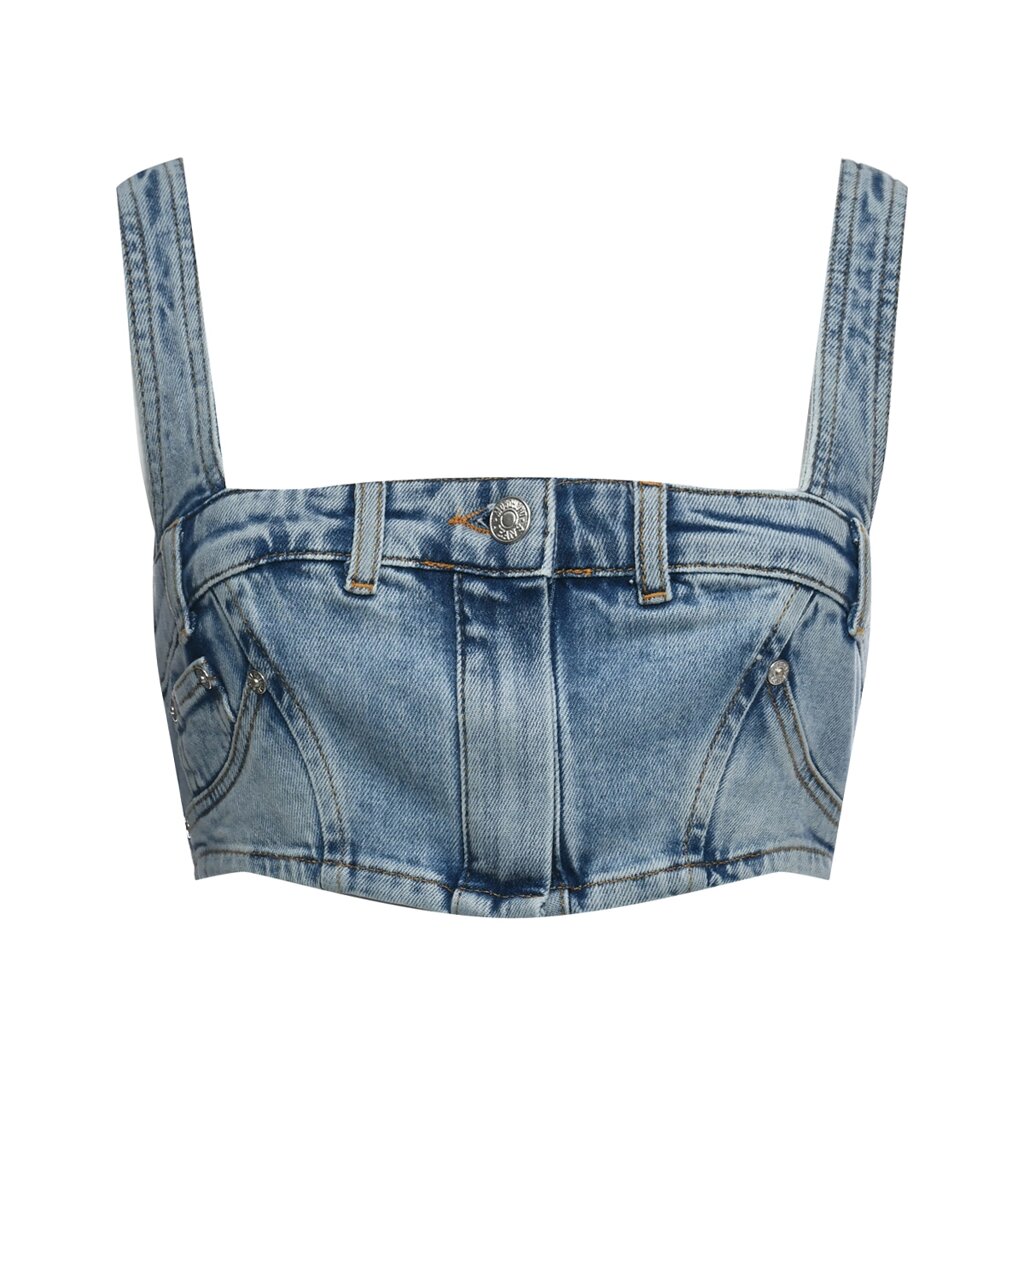 Топ с имититацией пояса брюк Mo5ch1no Jeans от компании Admi - фото 1